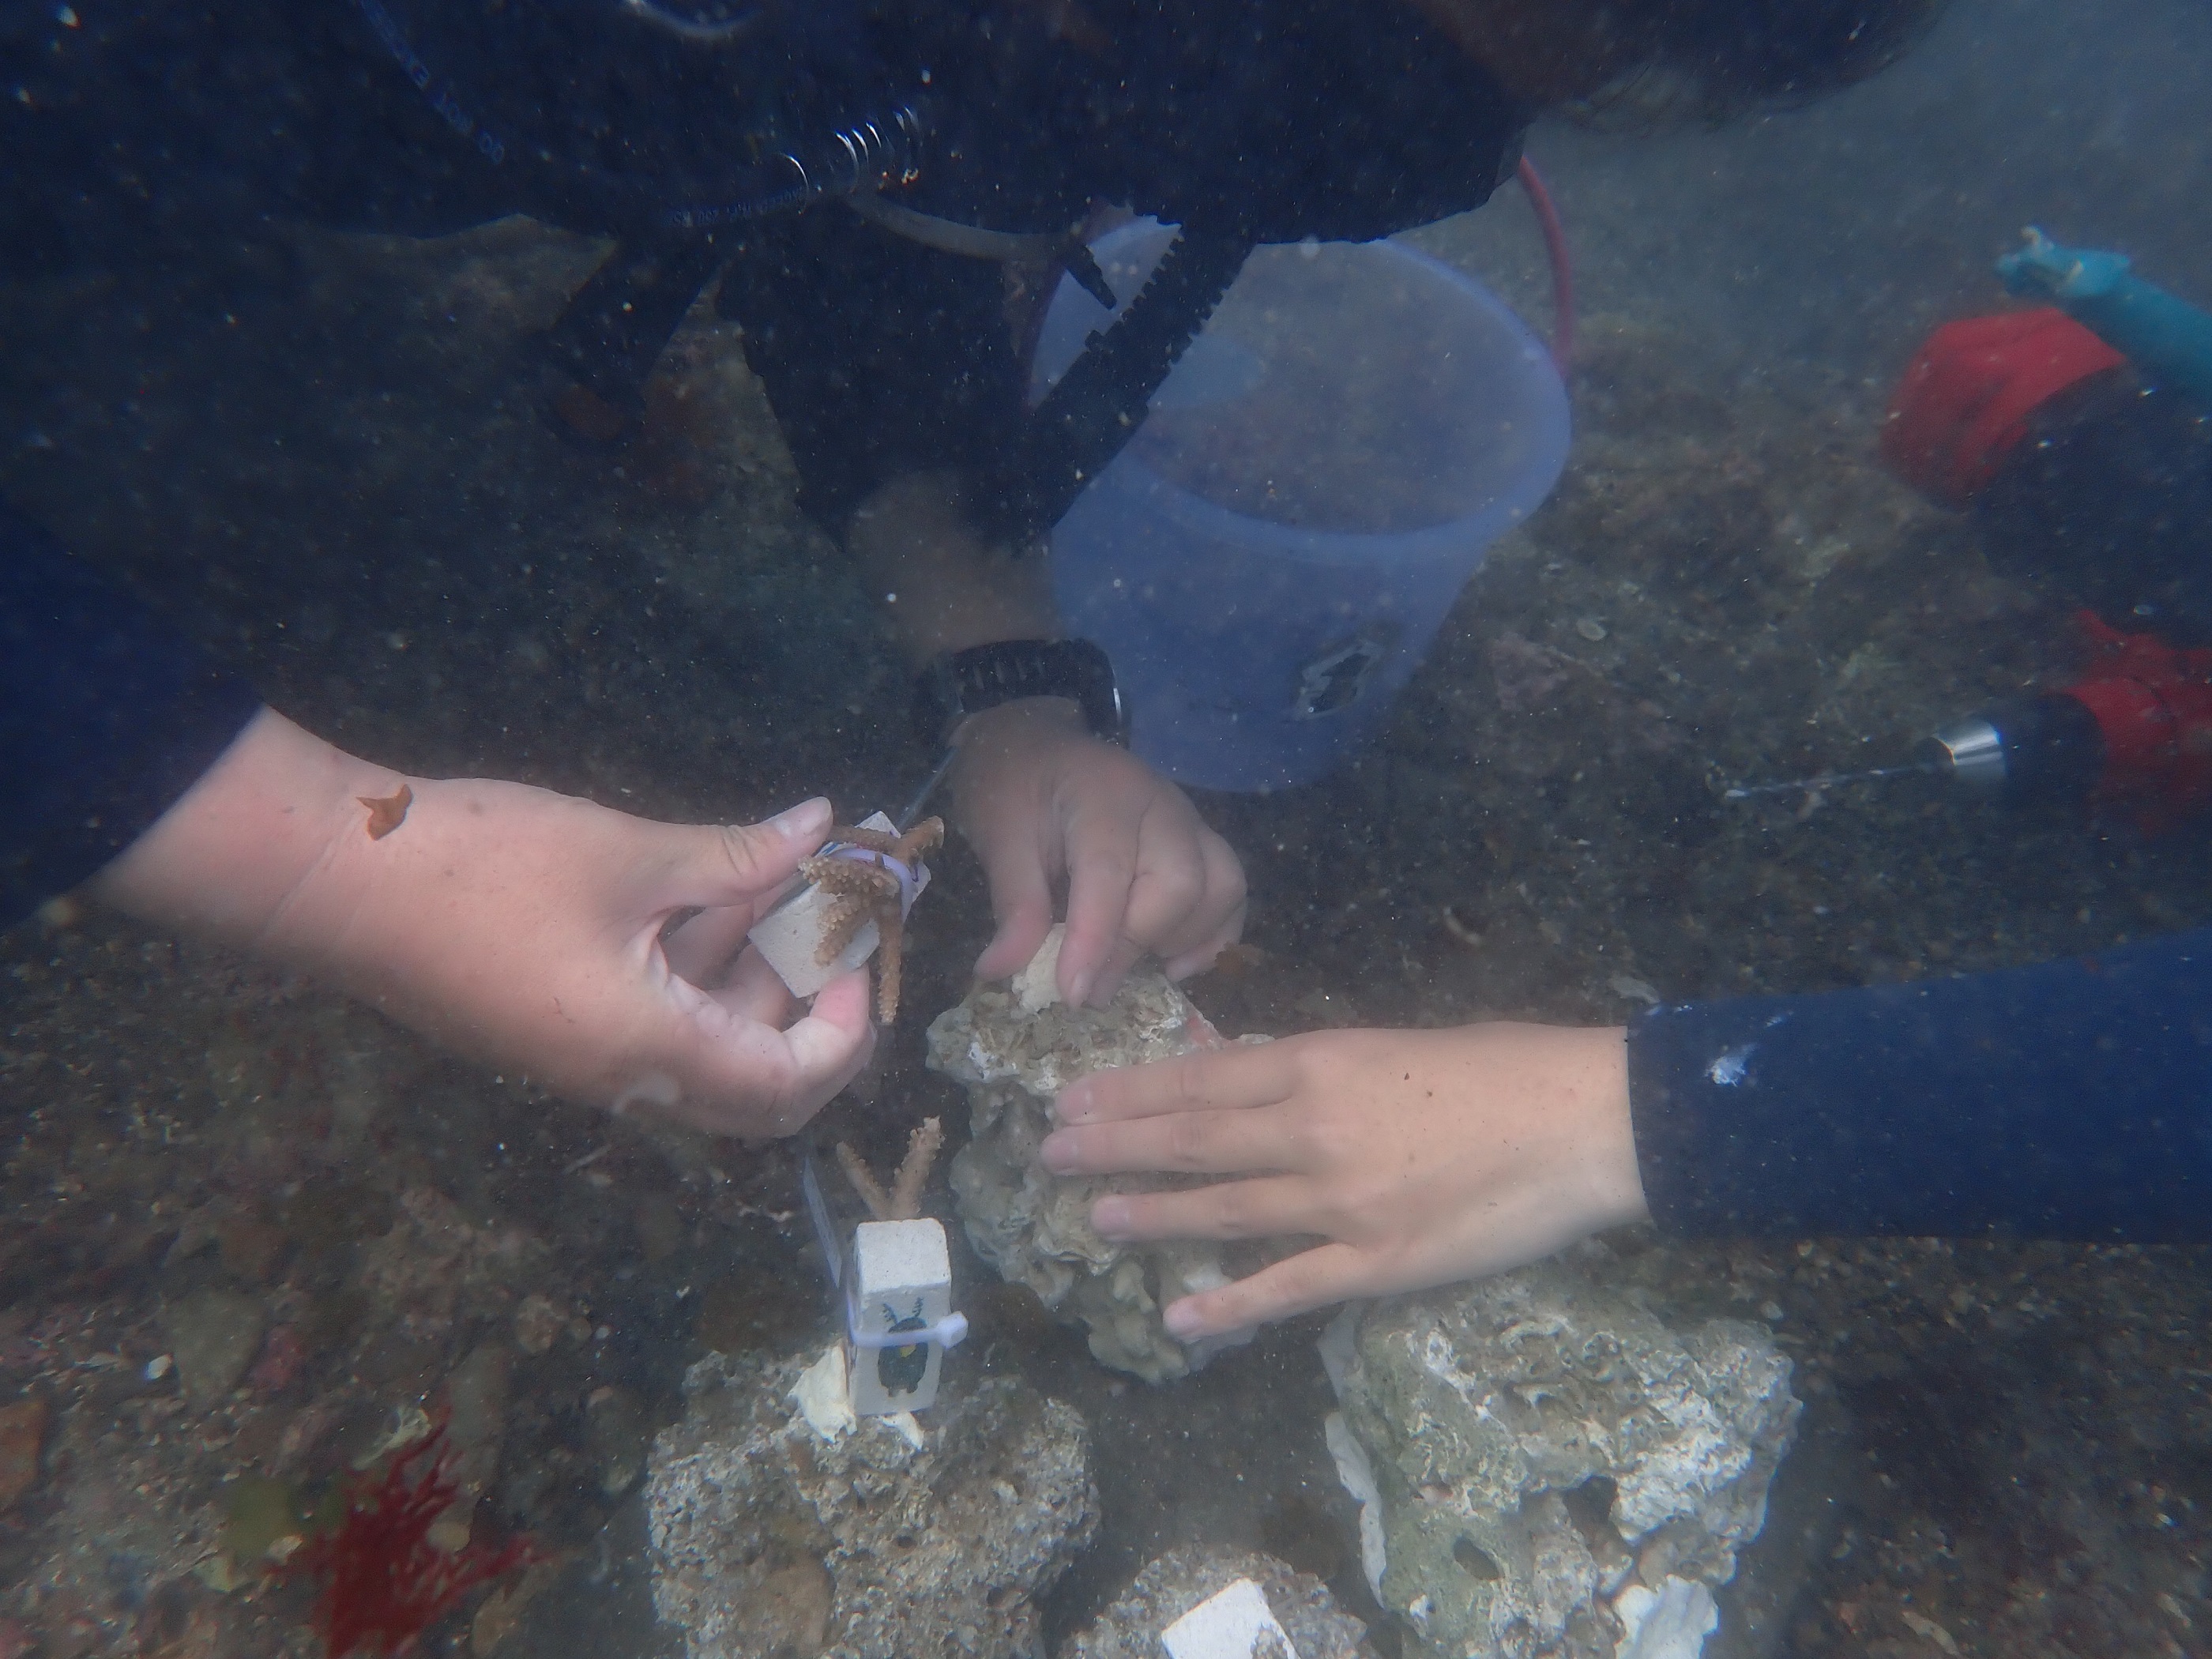 珊瑚移植工作坊限量招募25名志工   為海洋永續盡一份力